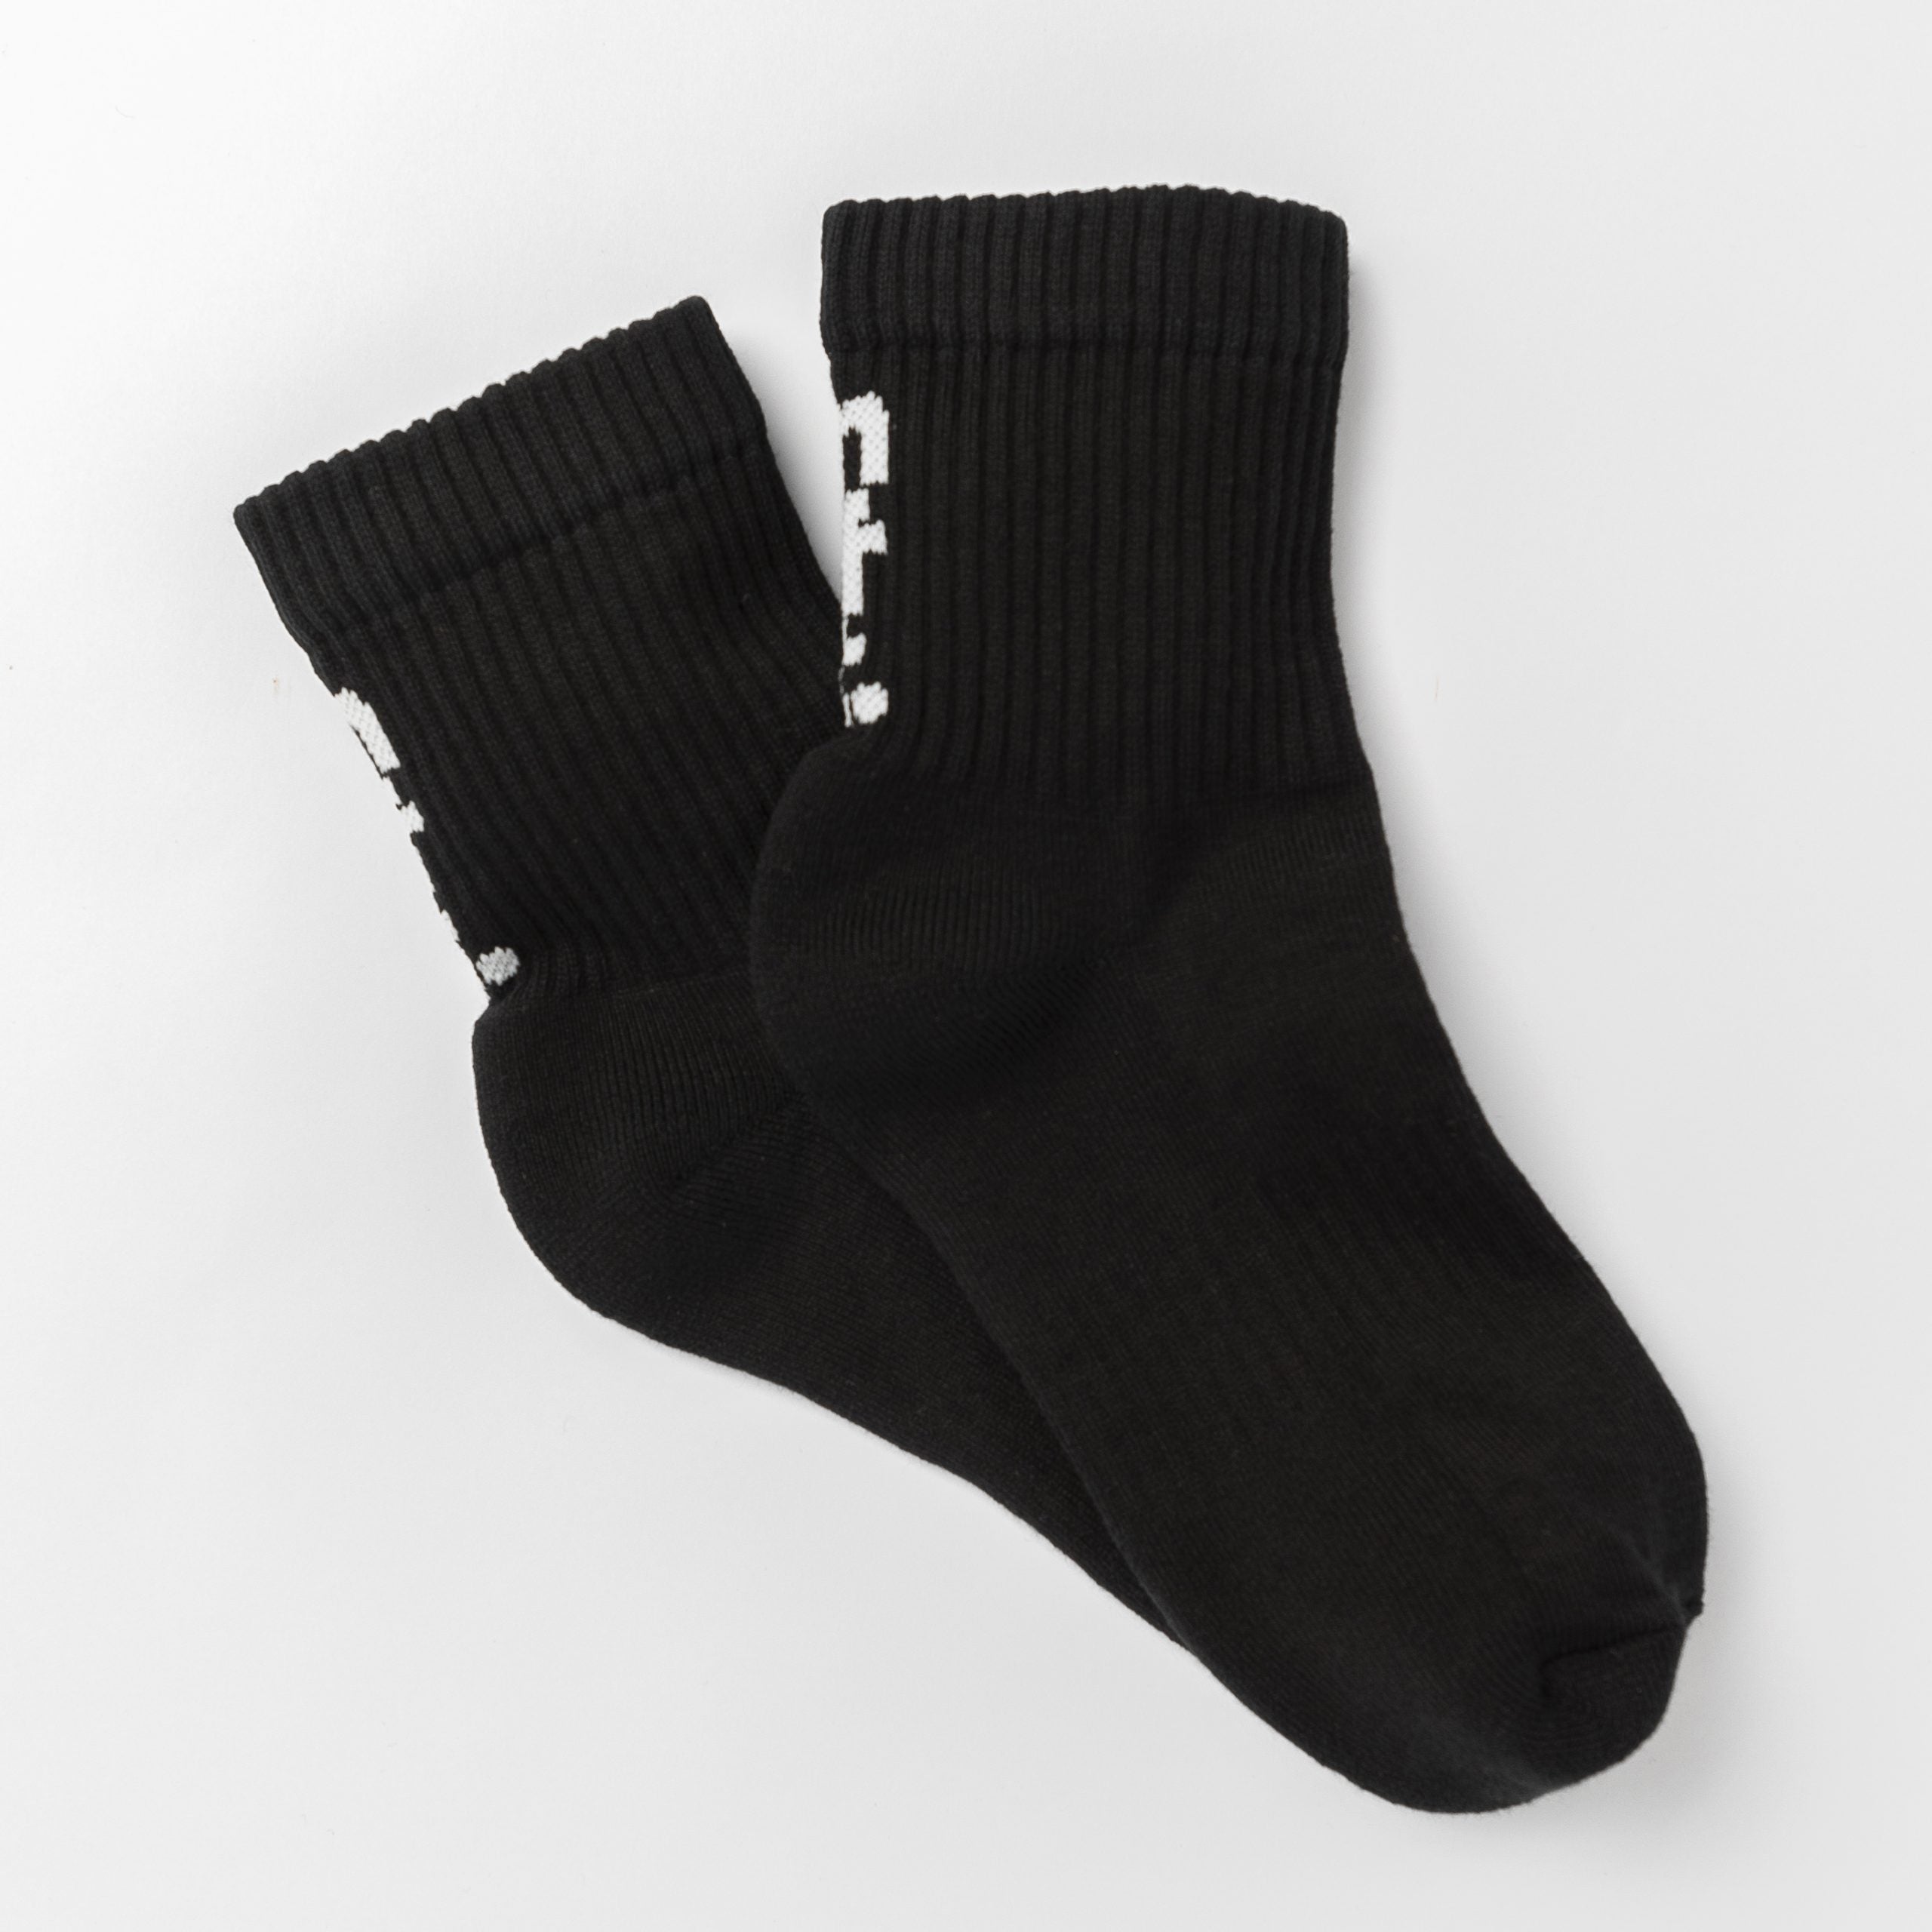 Socks for men size 13-21, large Socks for Men